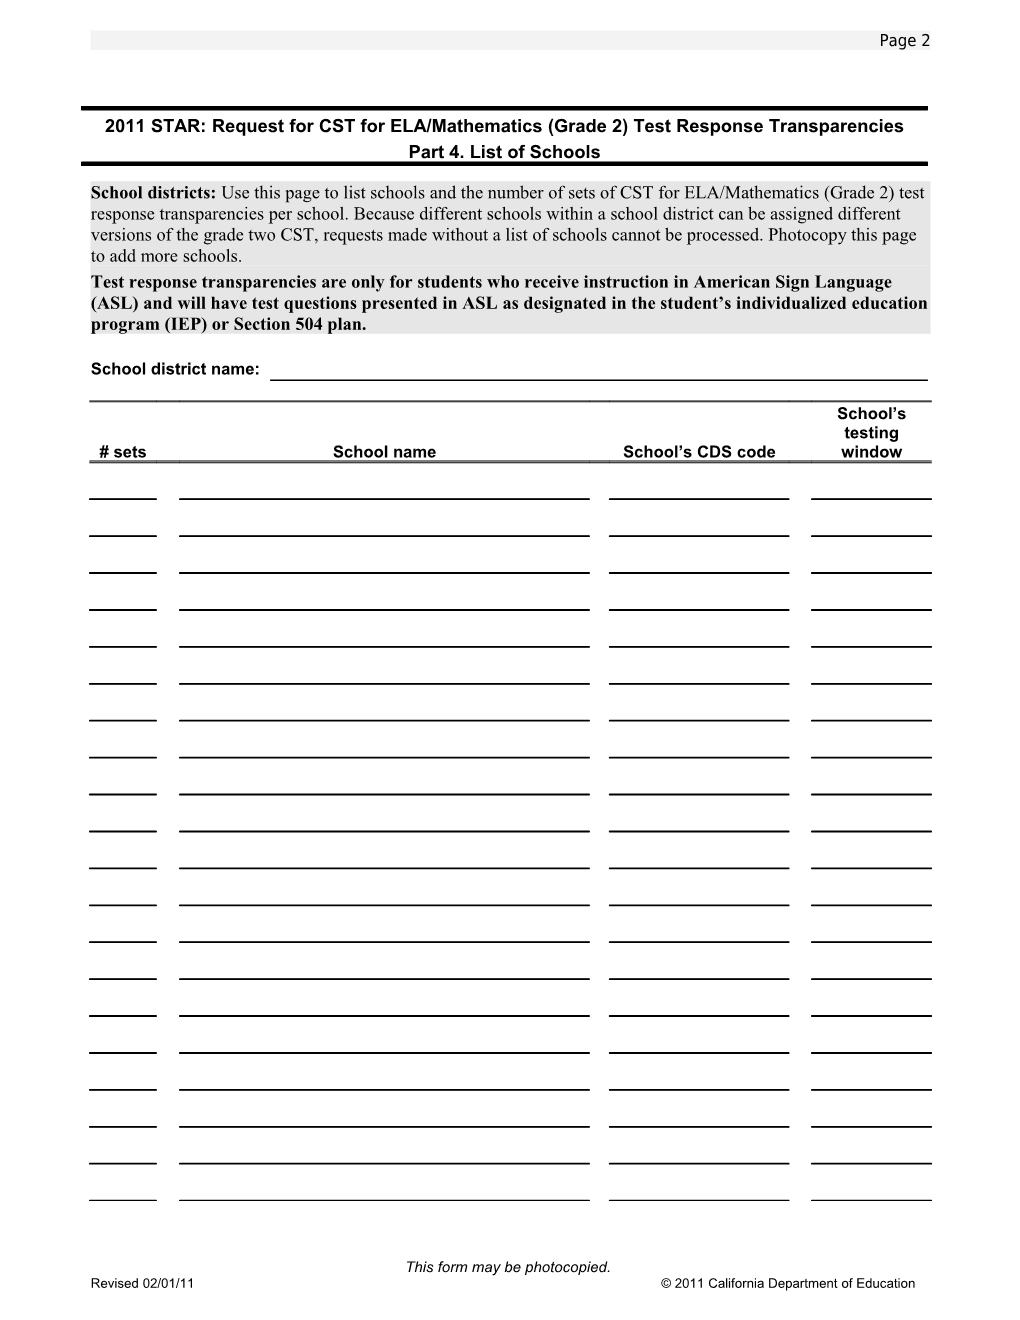 CST Grade 2 ELA/Mathematics Transparencies Request Form